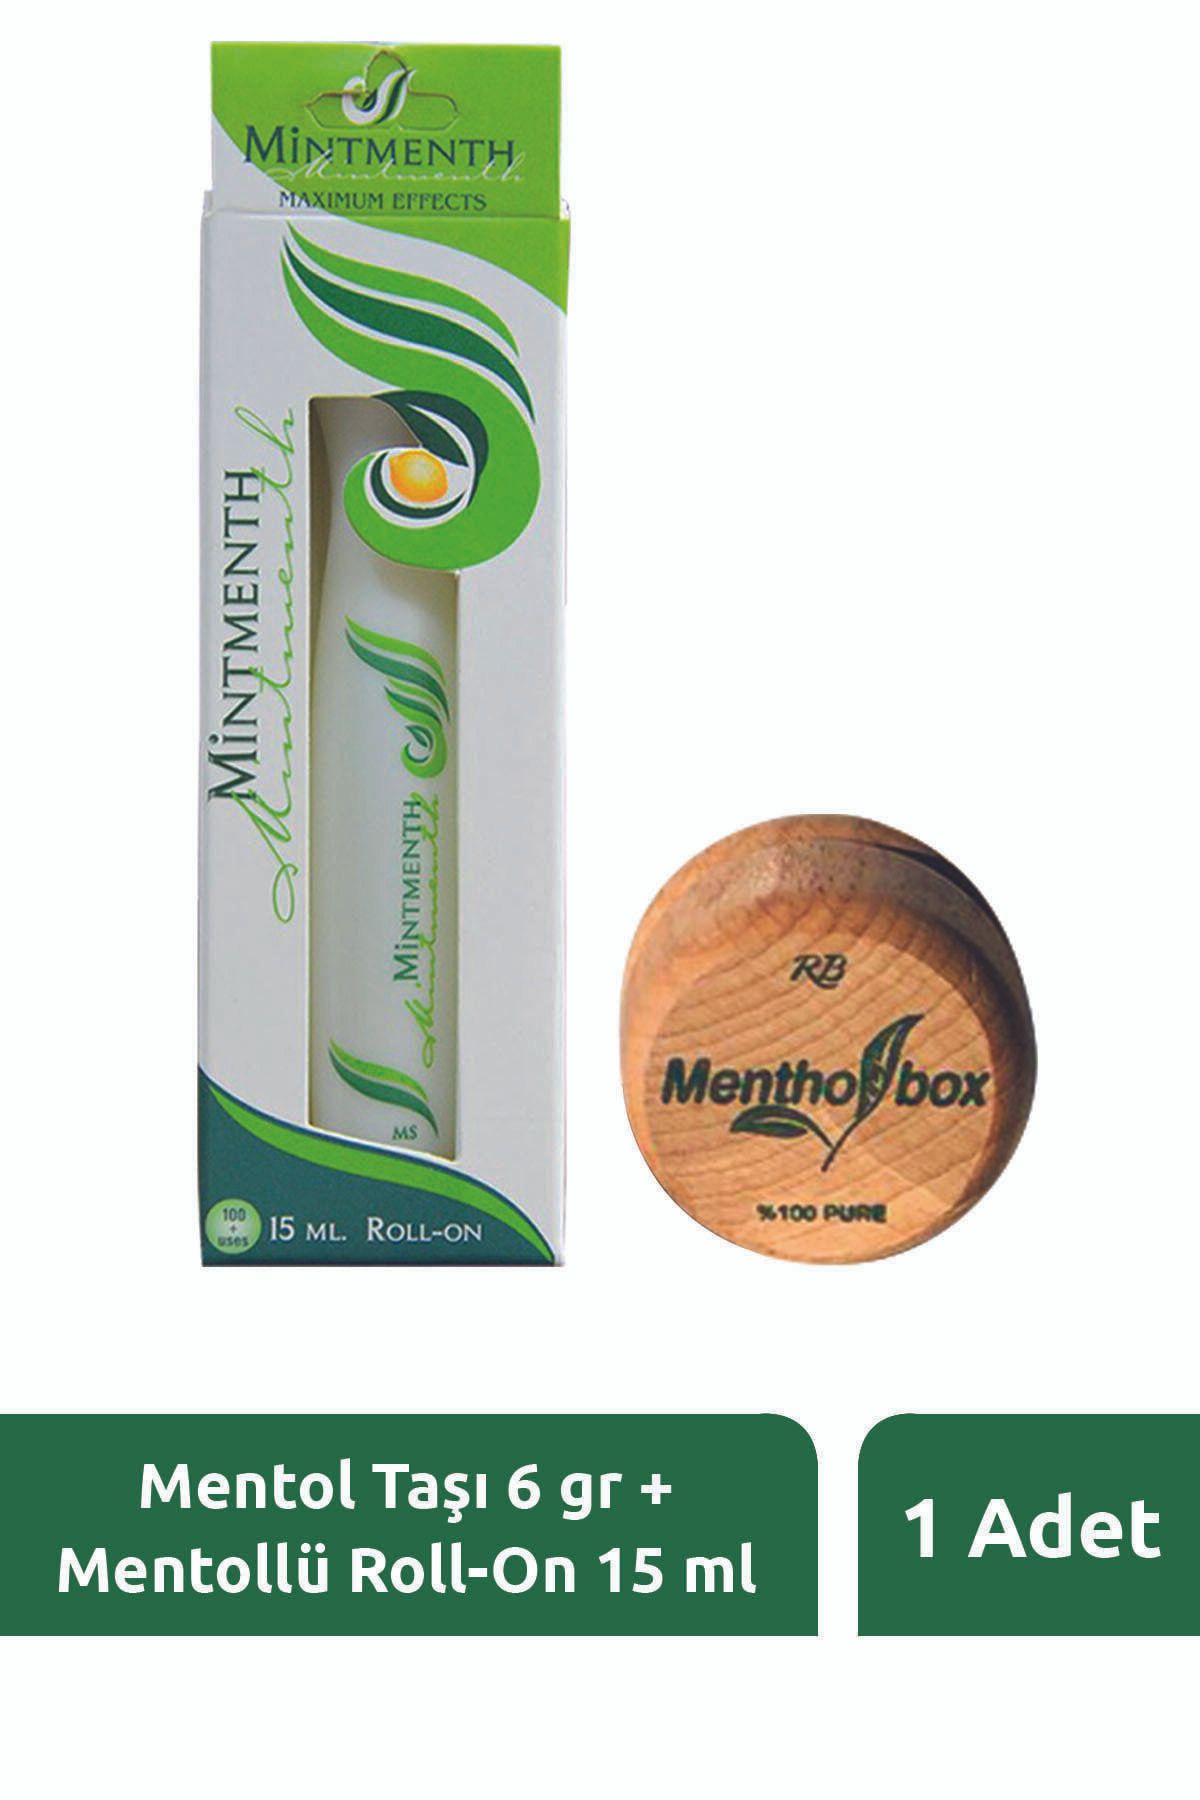 Menthol Box Mentol Taşı 6 gr Roll-on 15 ml (ÖZET SET)